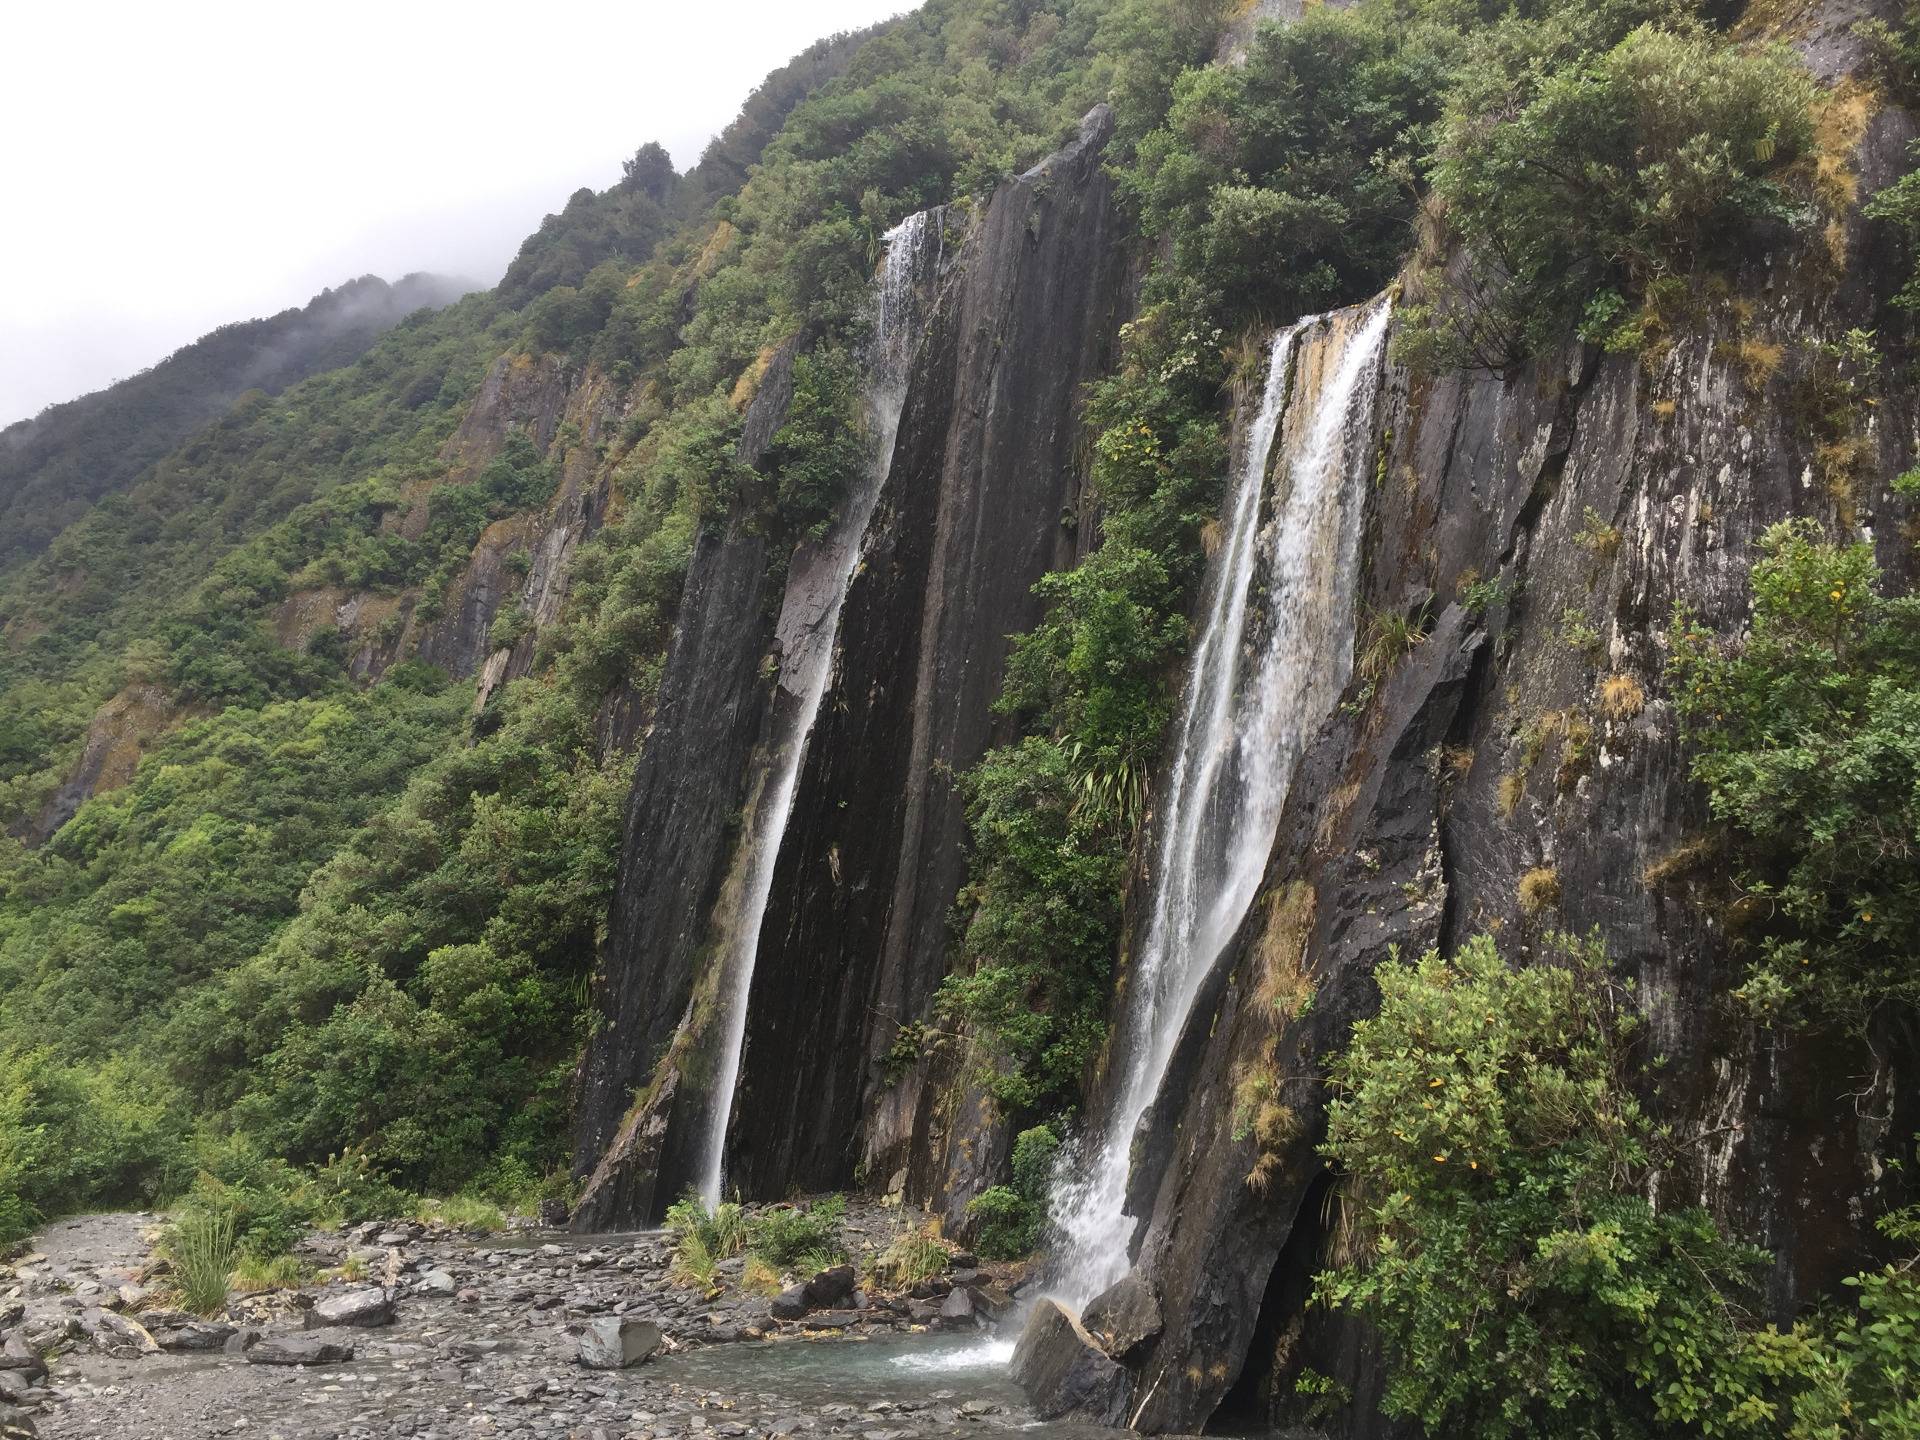 We saw incredible waterfalls while walking 